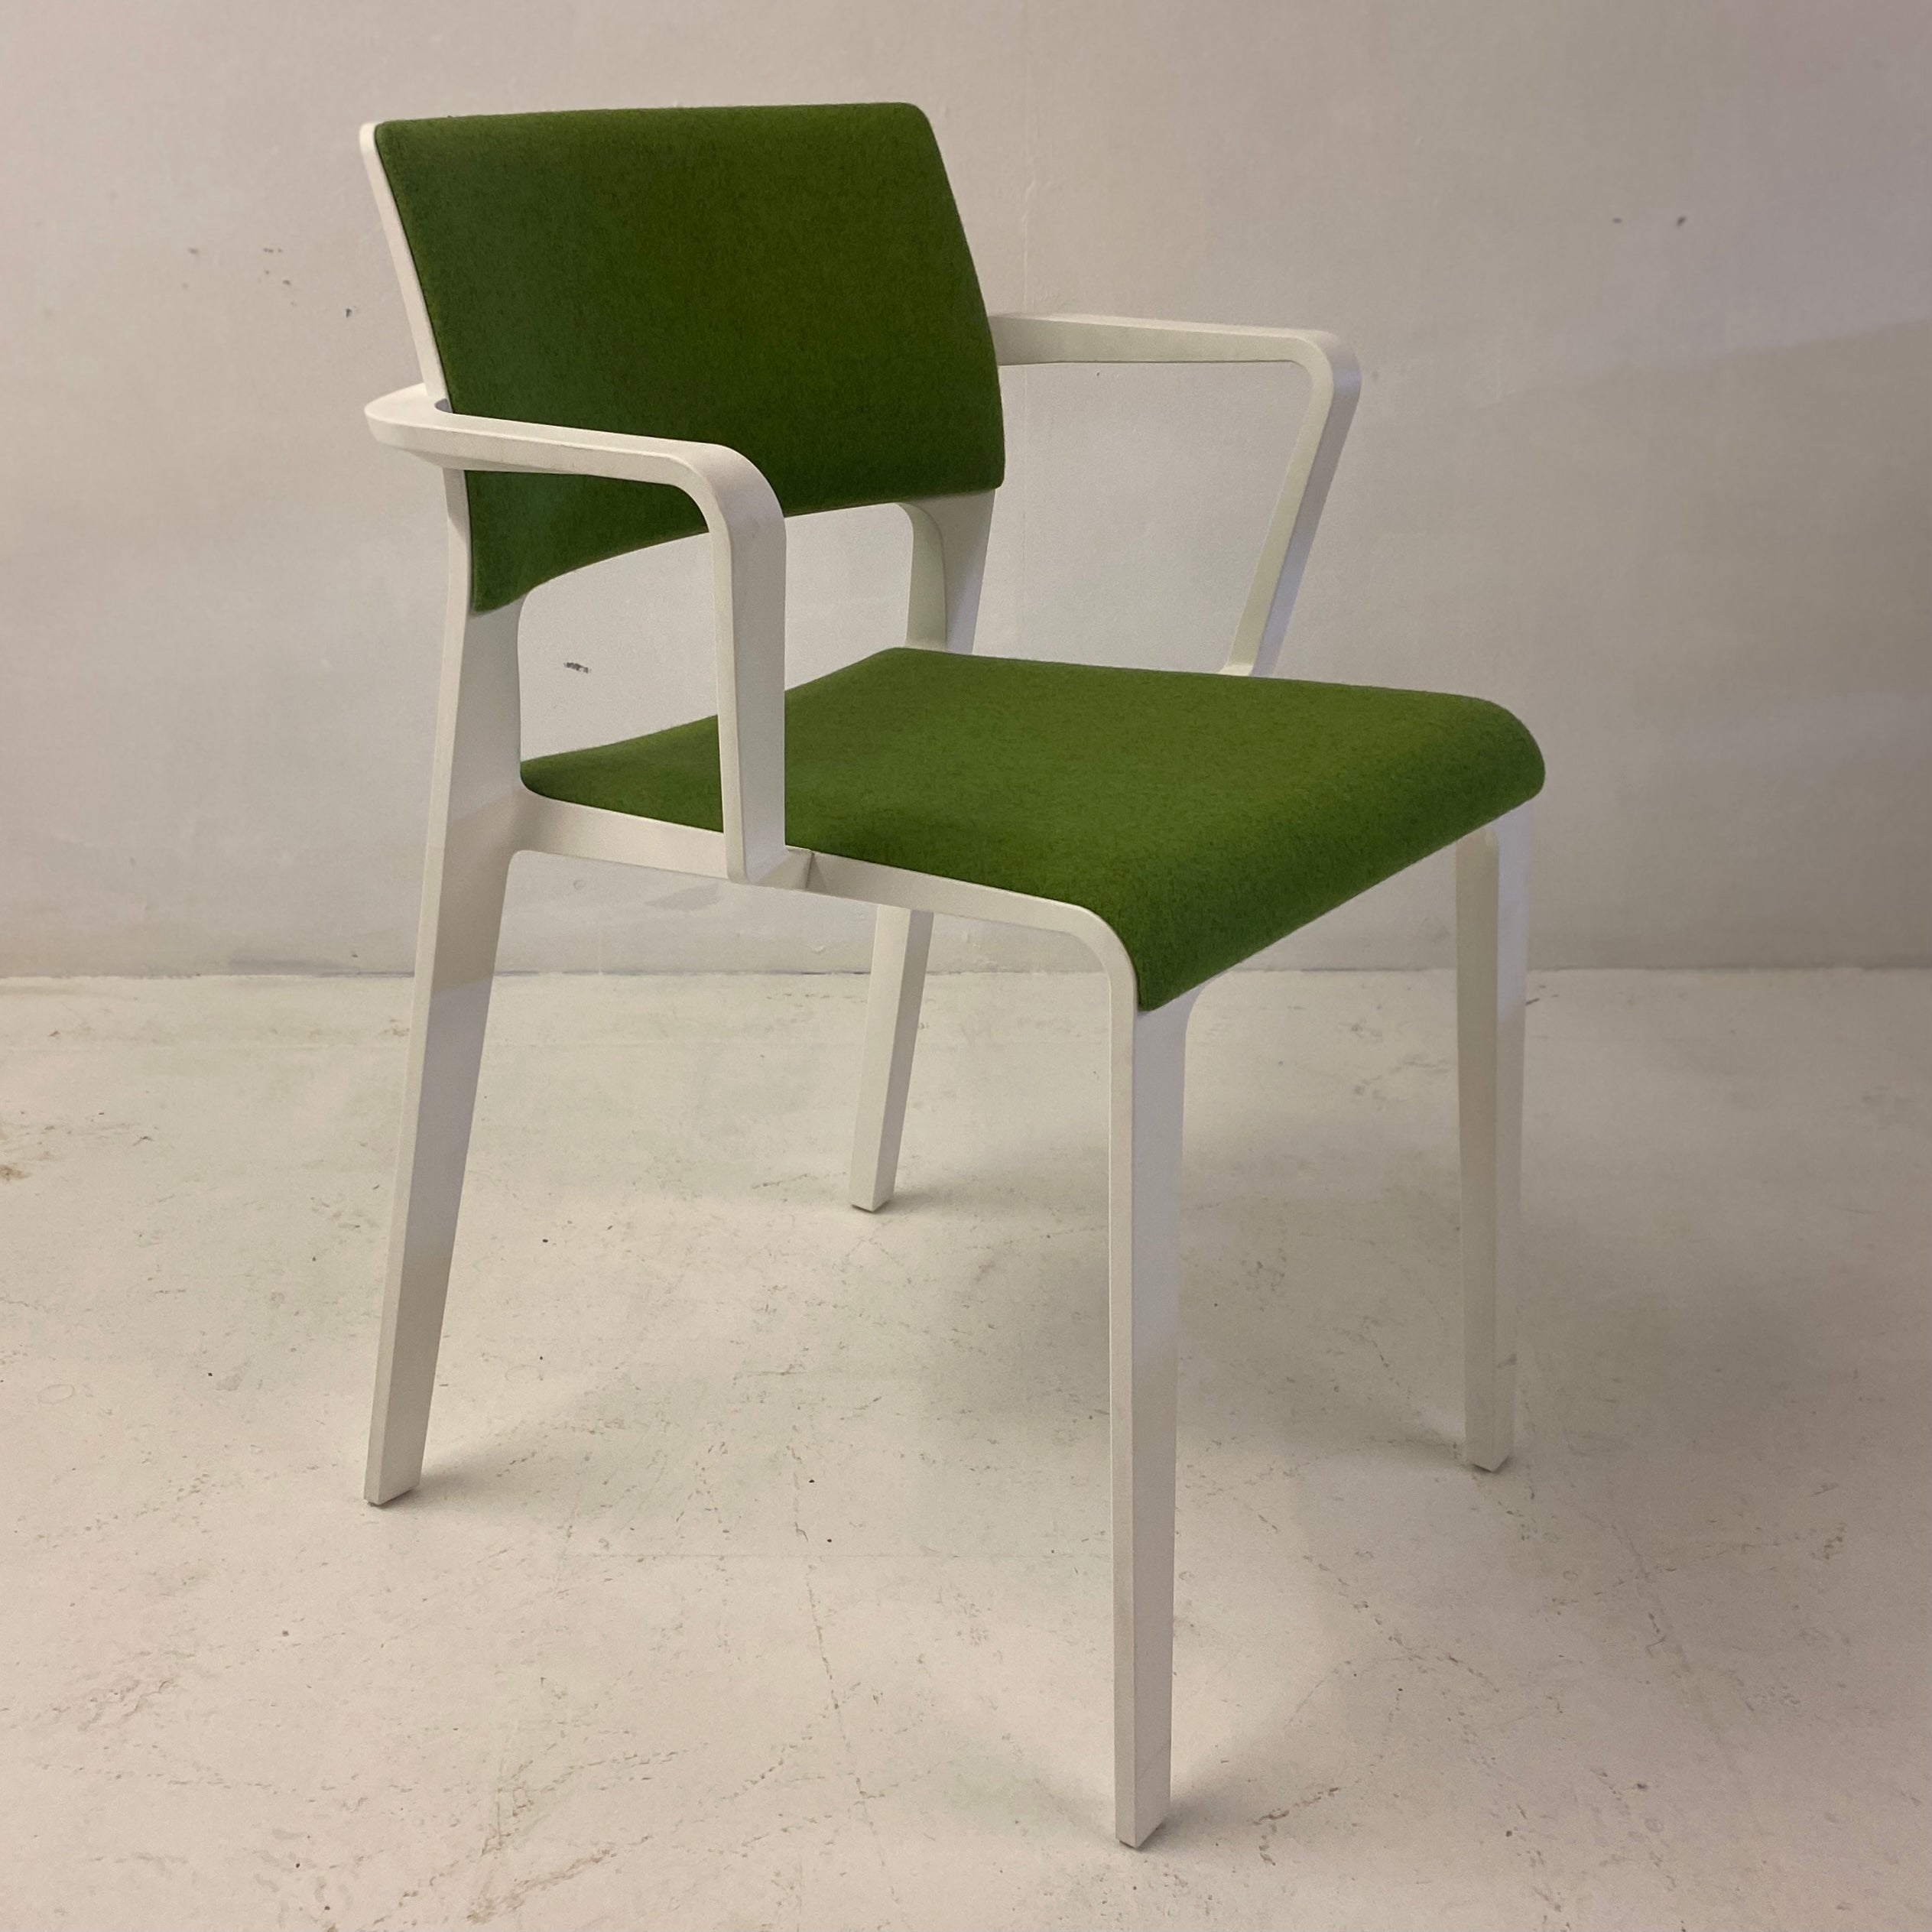 Desk Chair Green 